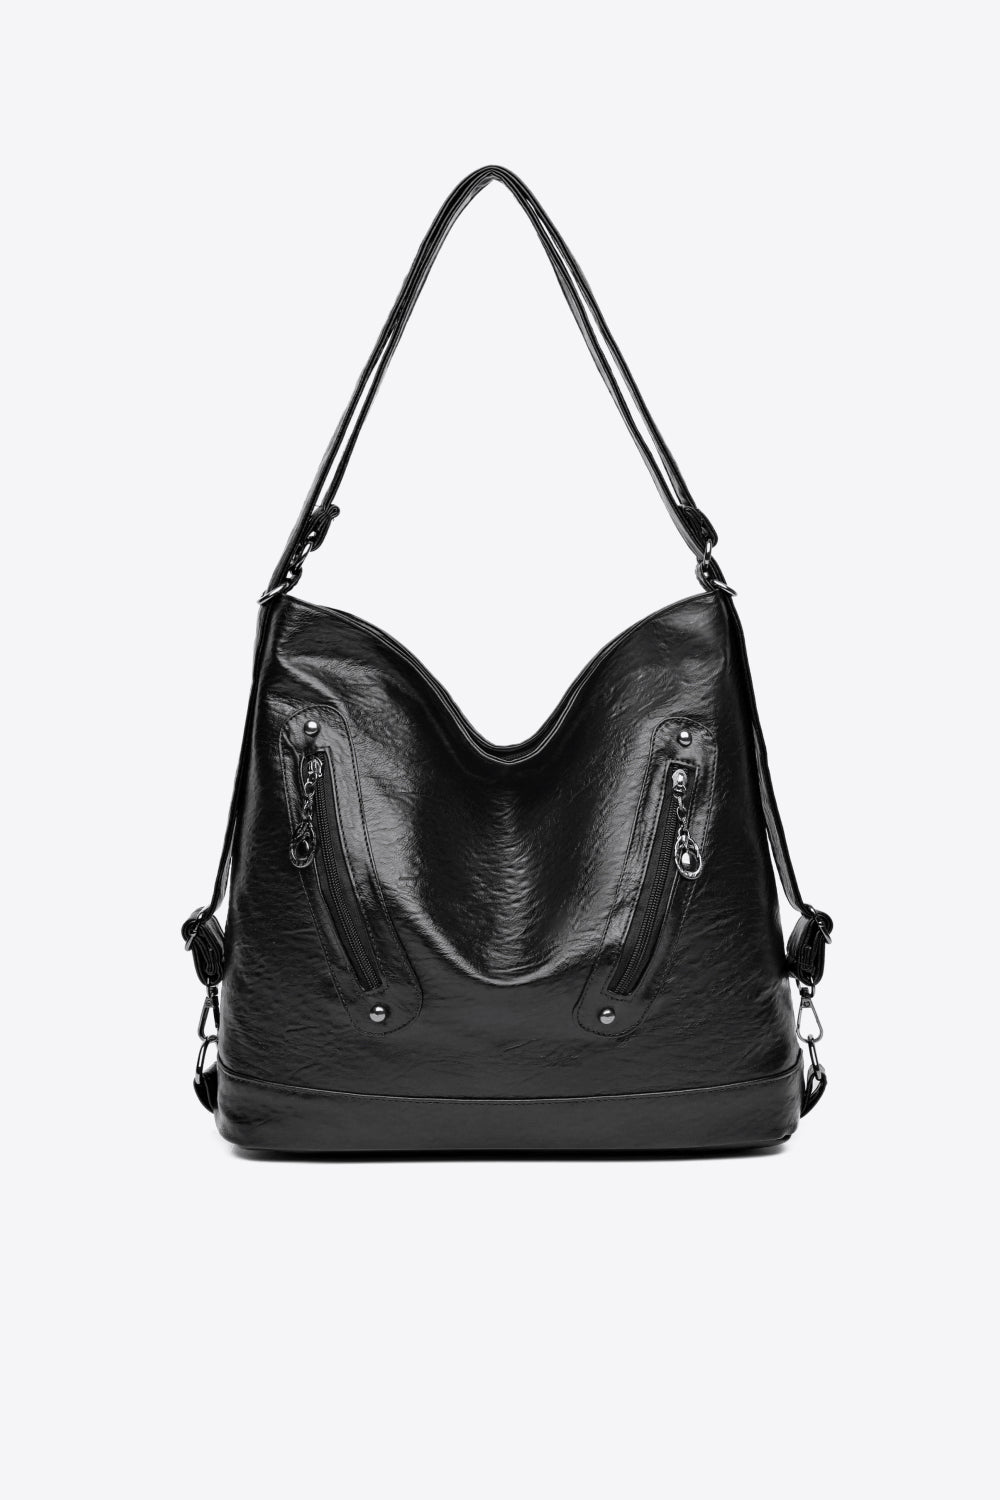 PU Leather Shoulder Bag Black One Size